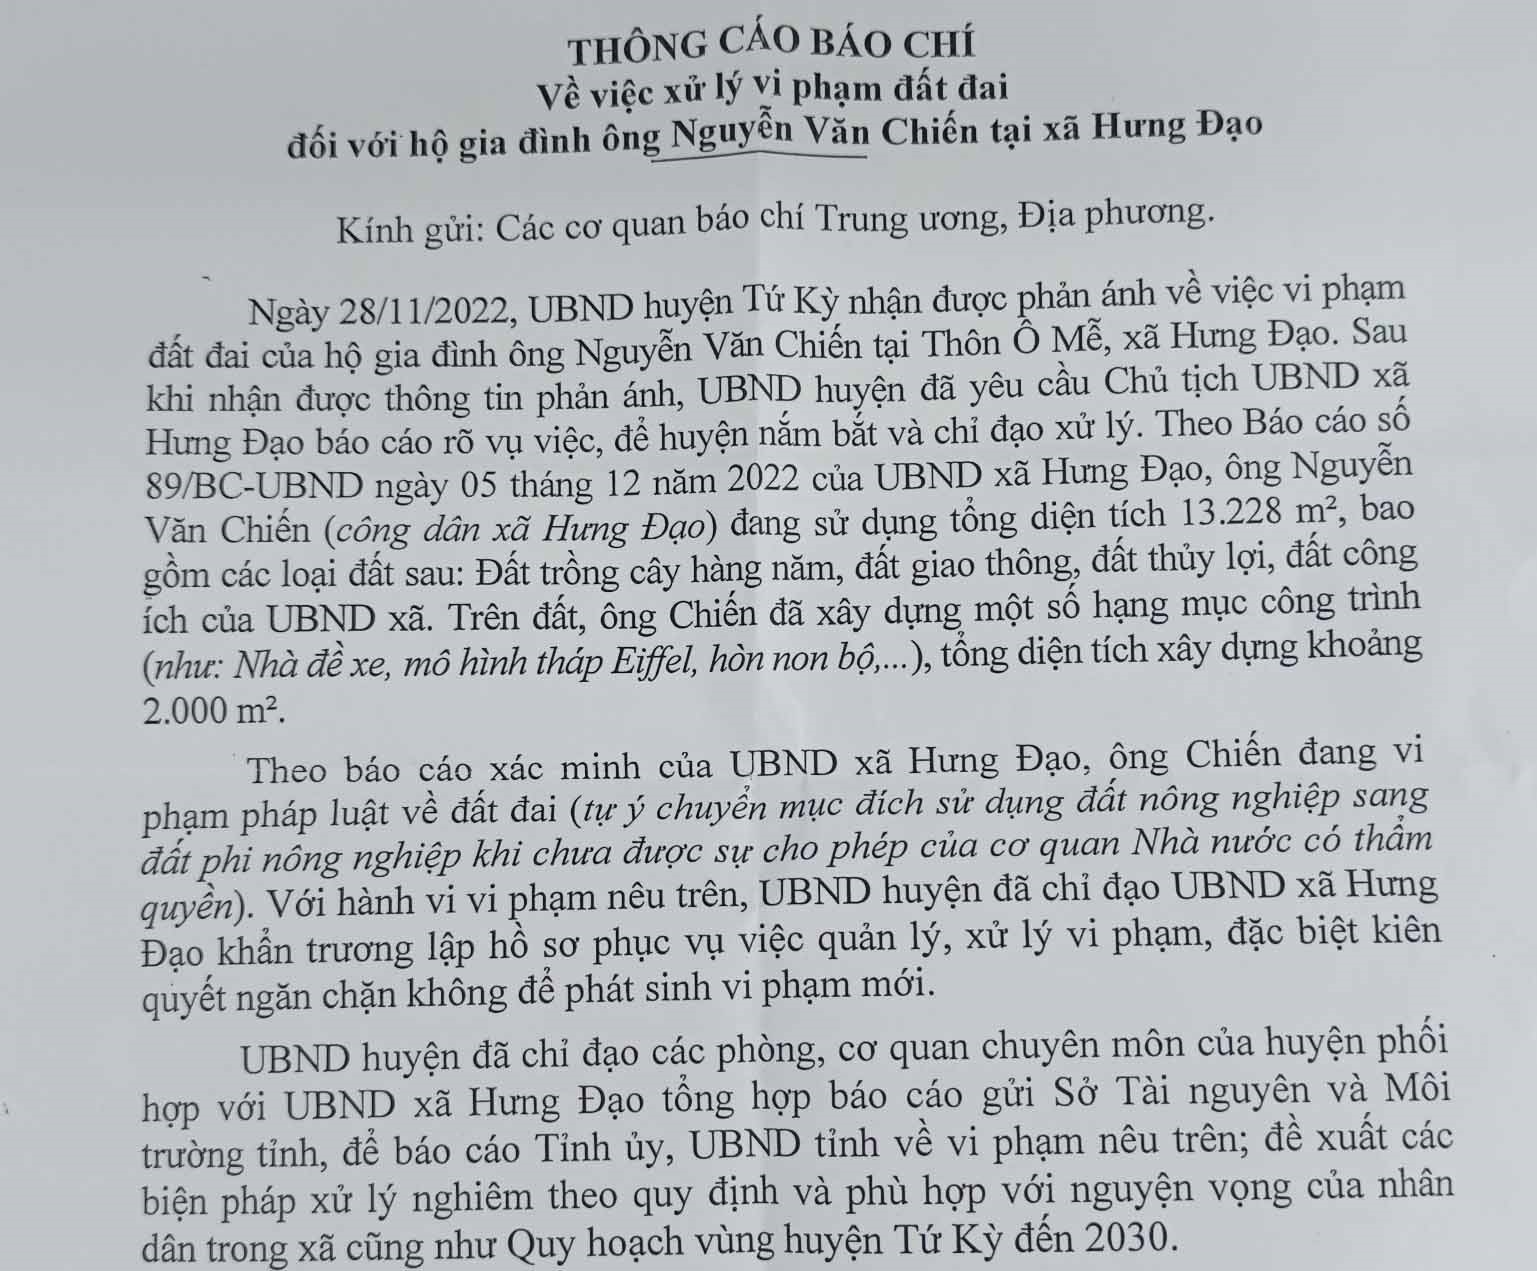 Thông cáo báo chí số 15/TC-UBND của UBND huyện Tứ Kỳ.